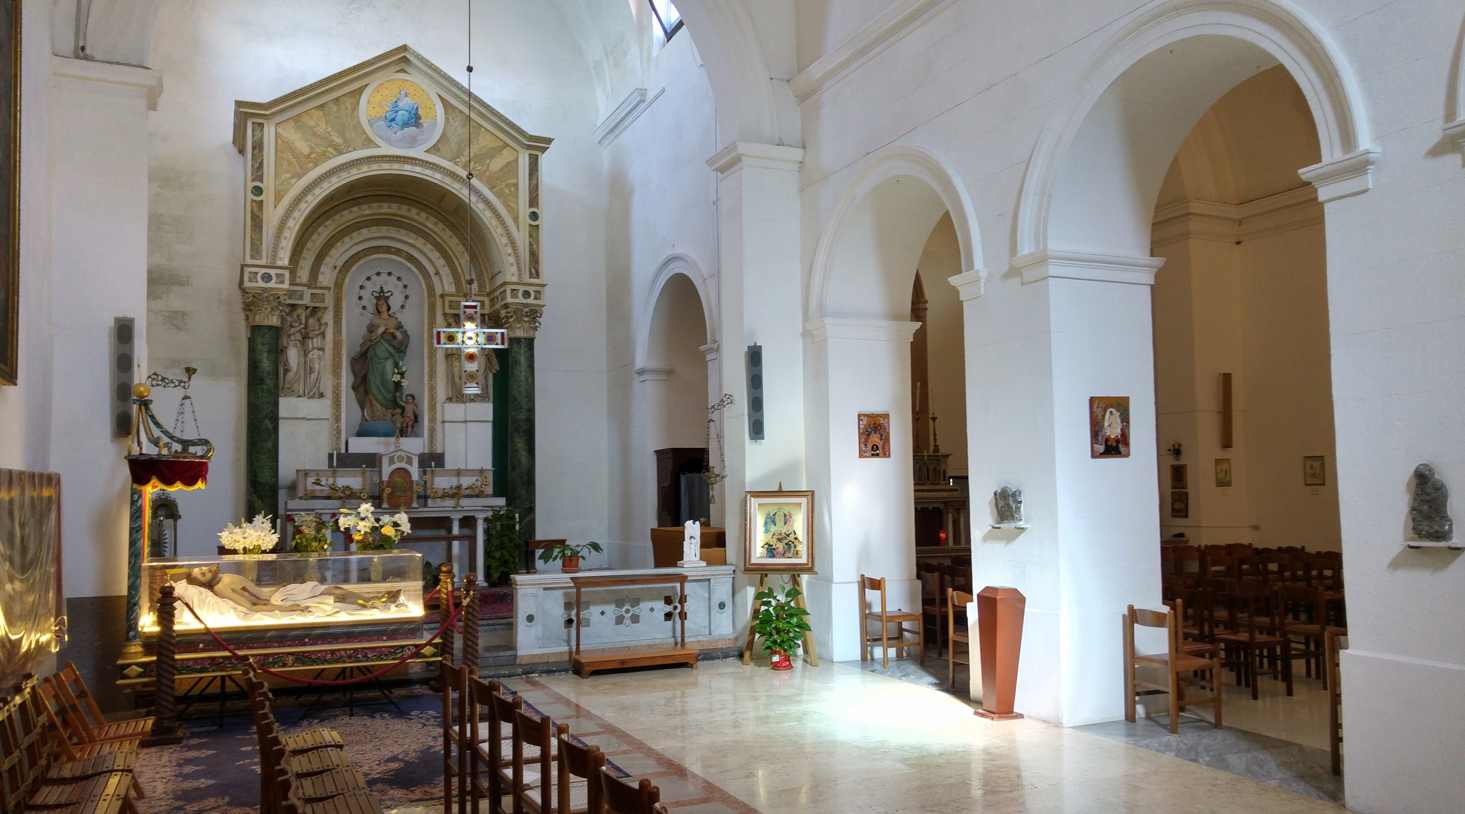 Bastión de Marchiafava - interior de Santa Maria dell'Odigitria